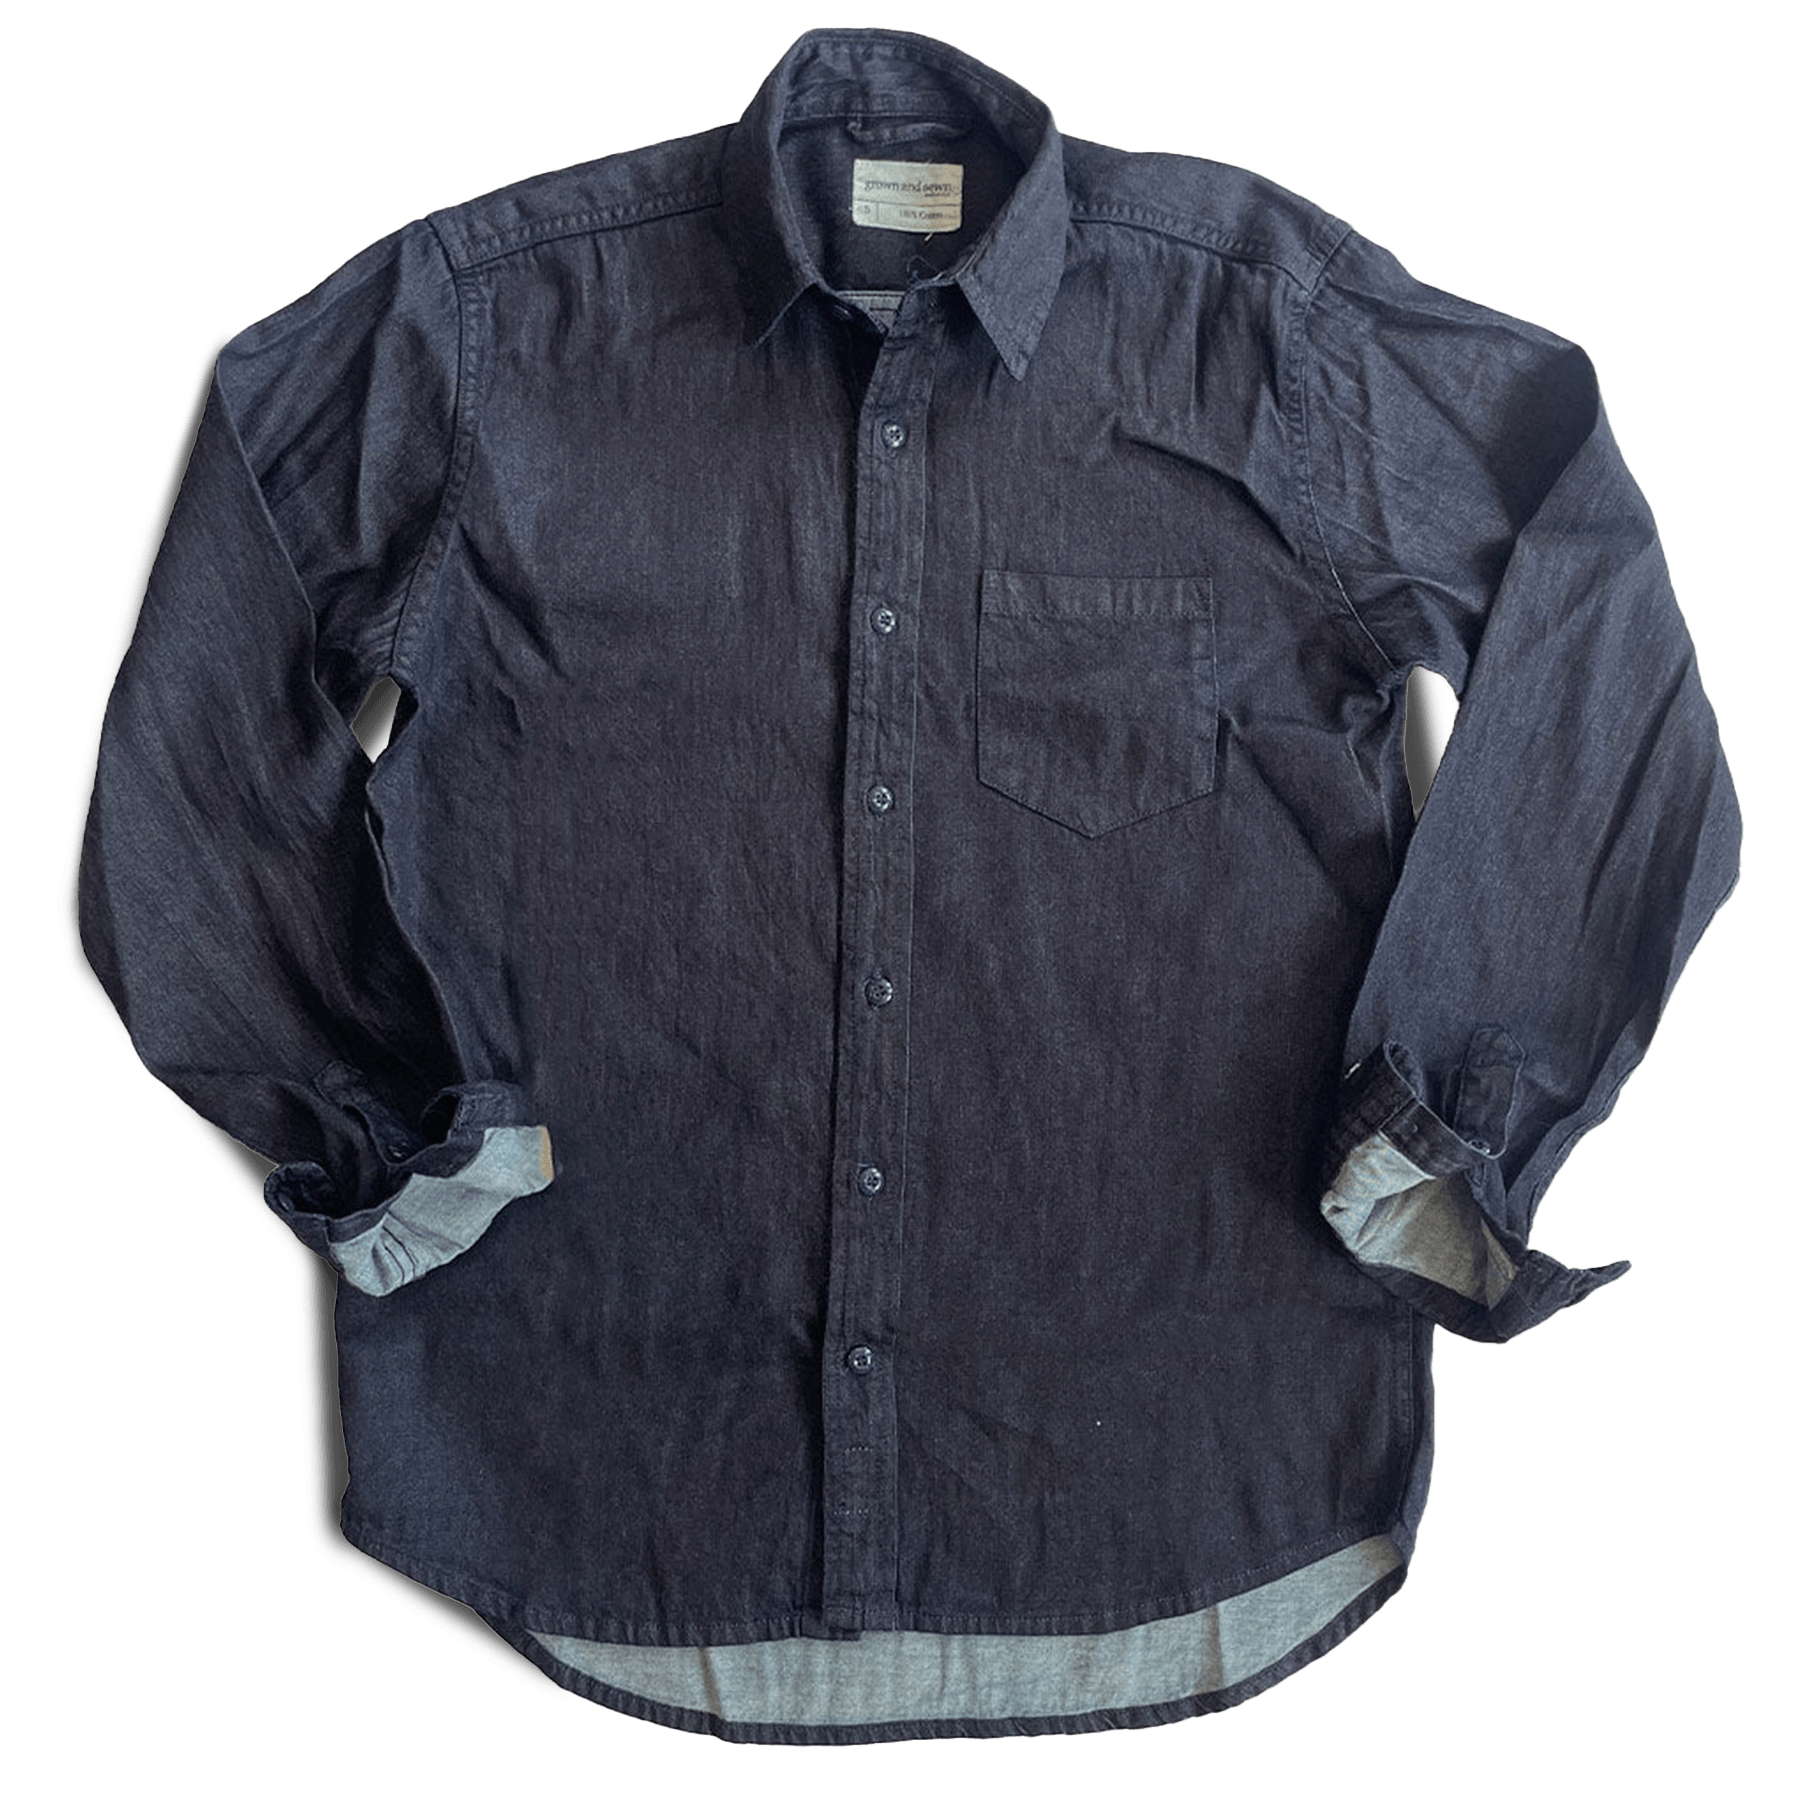 Dean Shirt - Natural Dark Indigo Twill - grown&sewn